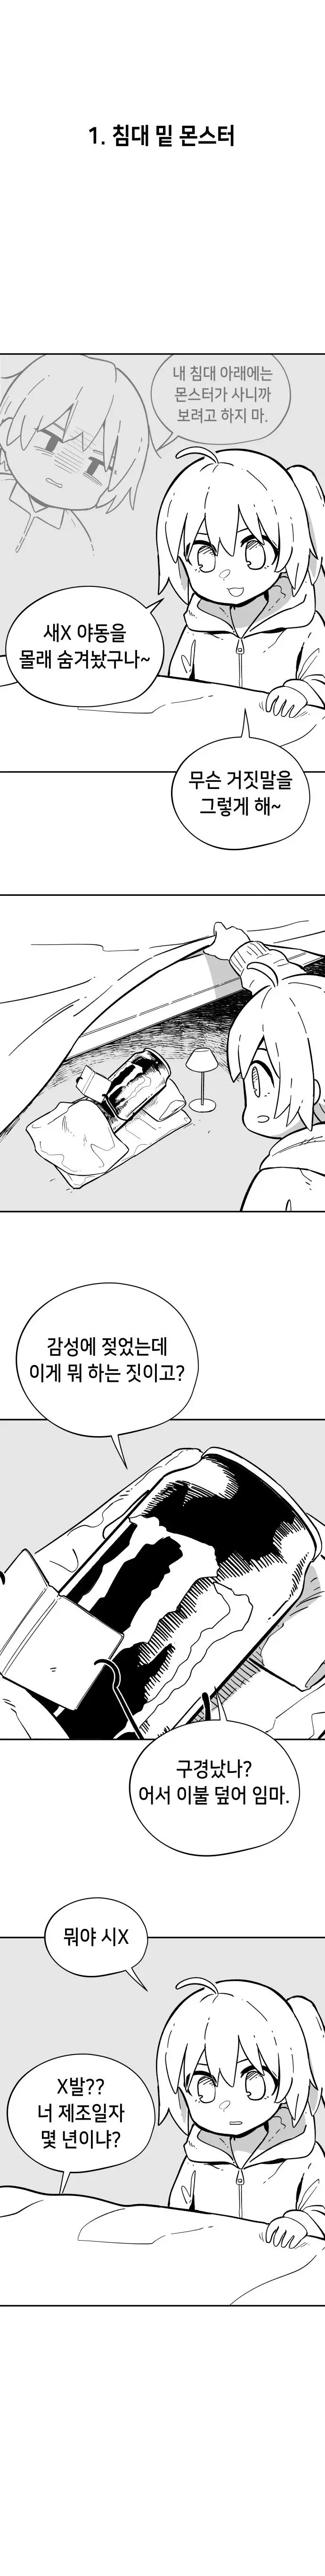 펌) 네이버 ㅋㅋㅋ단편 공모한 만화 업로드해봅니다 | mbong.kr 엠봉